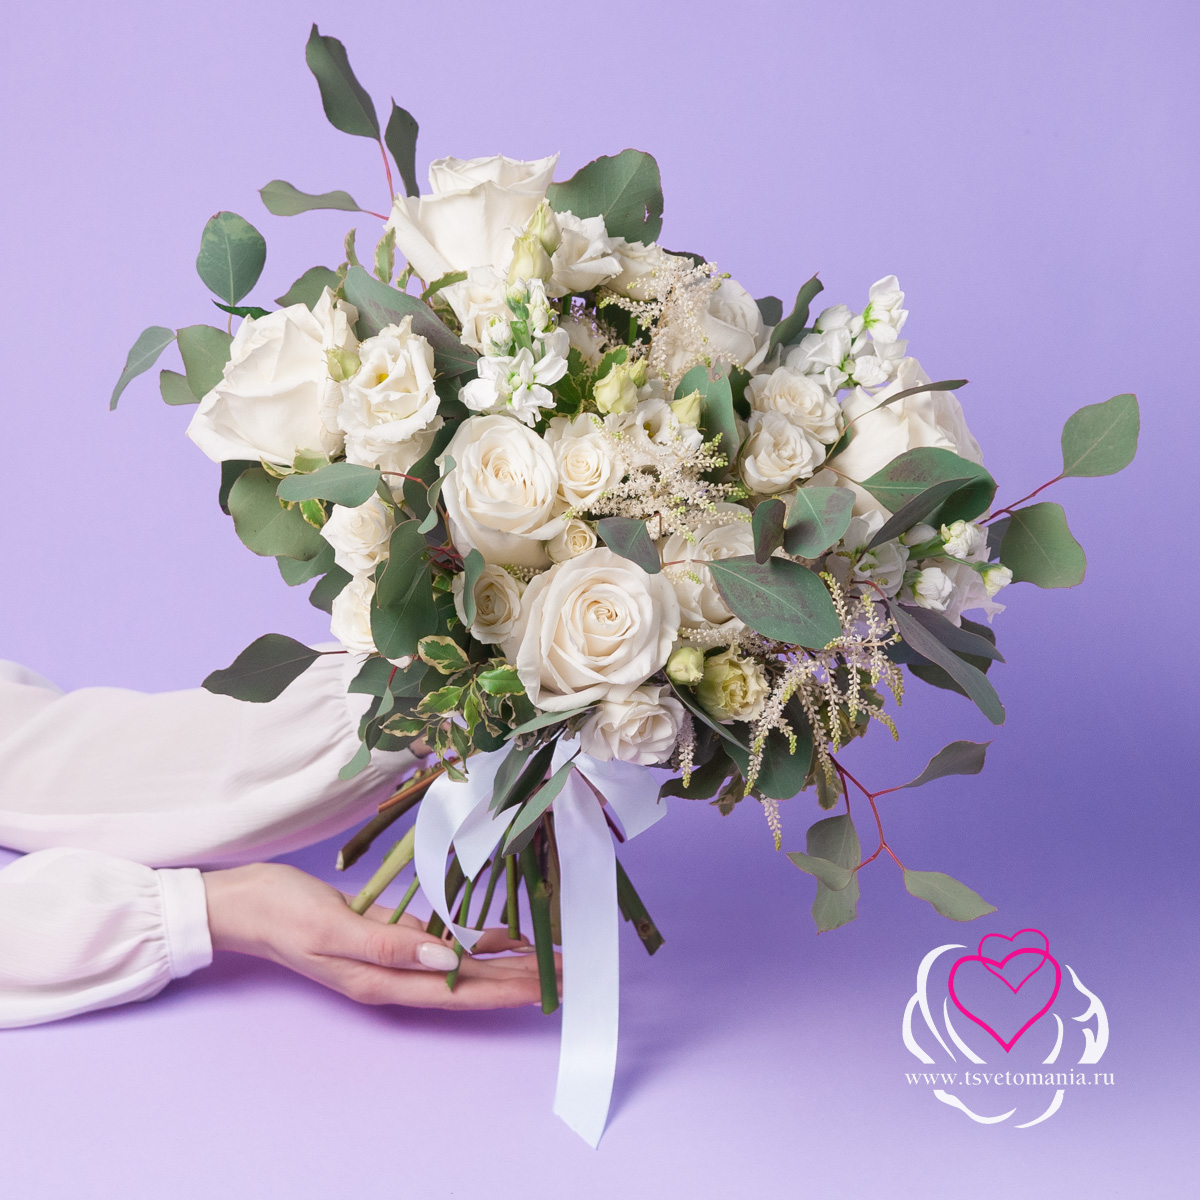 Белый свадебный букет из роз и астильбы набор астильбы цветочный этюд 3 шт